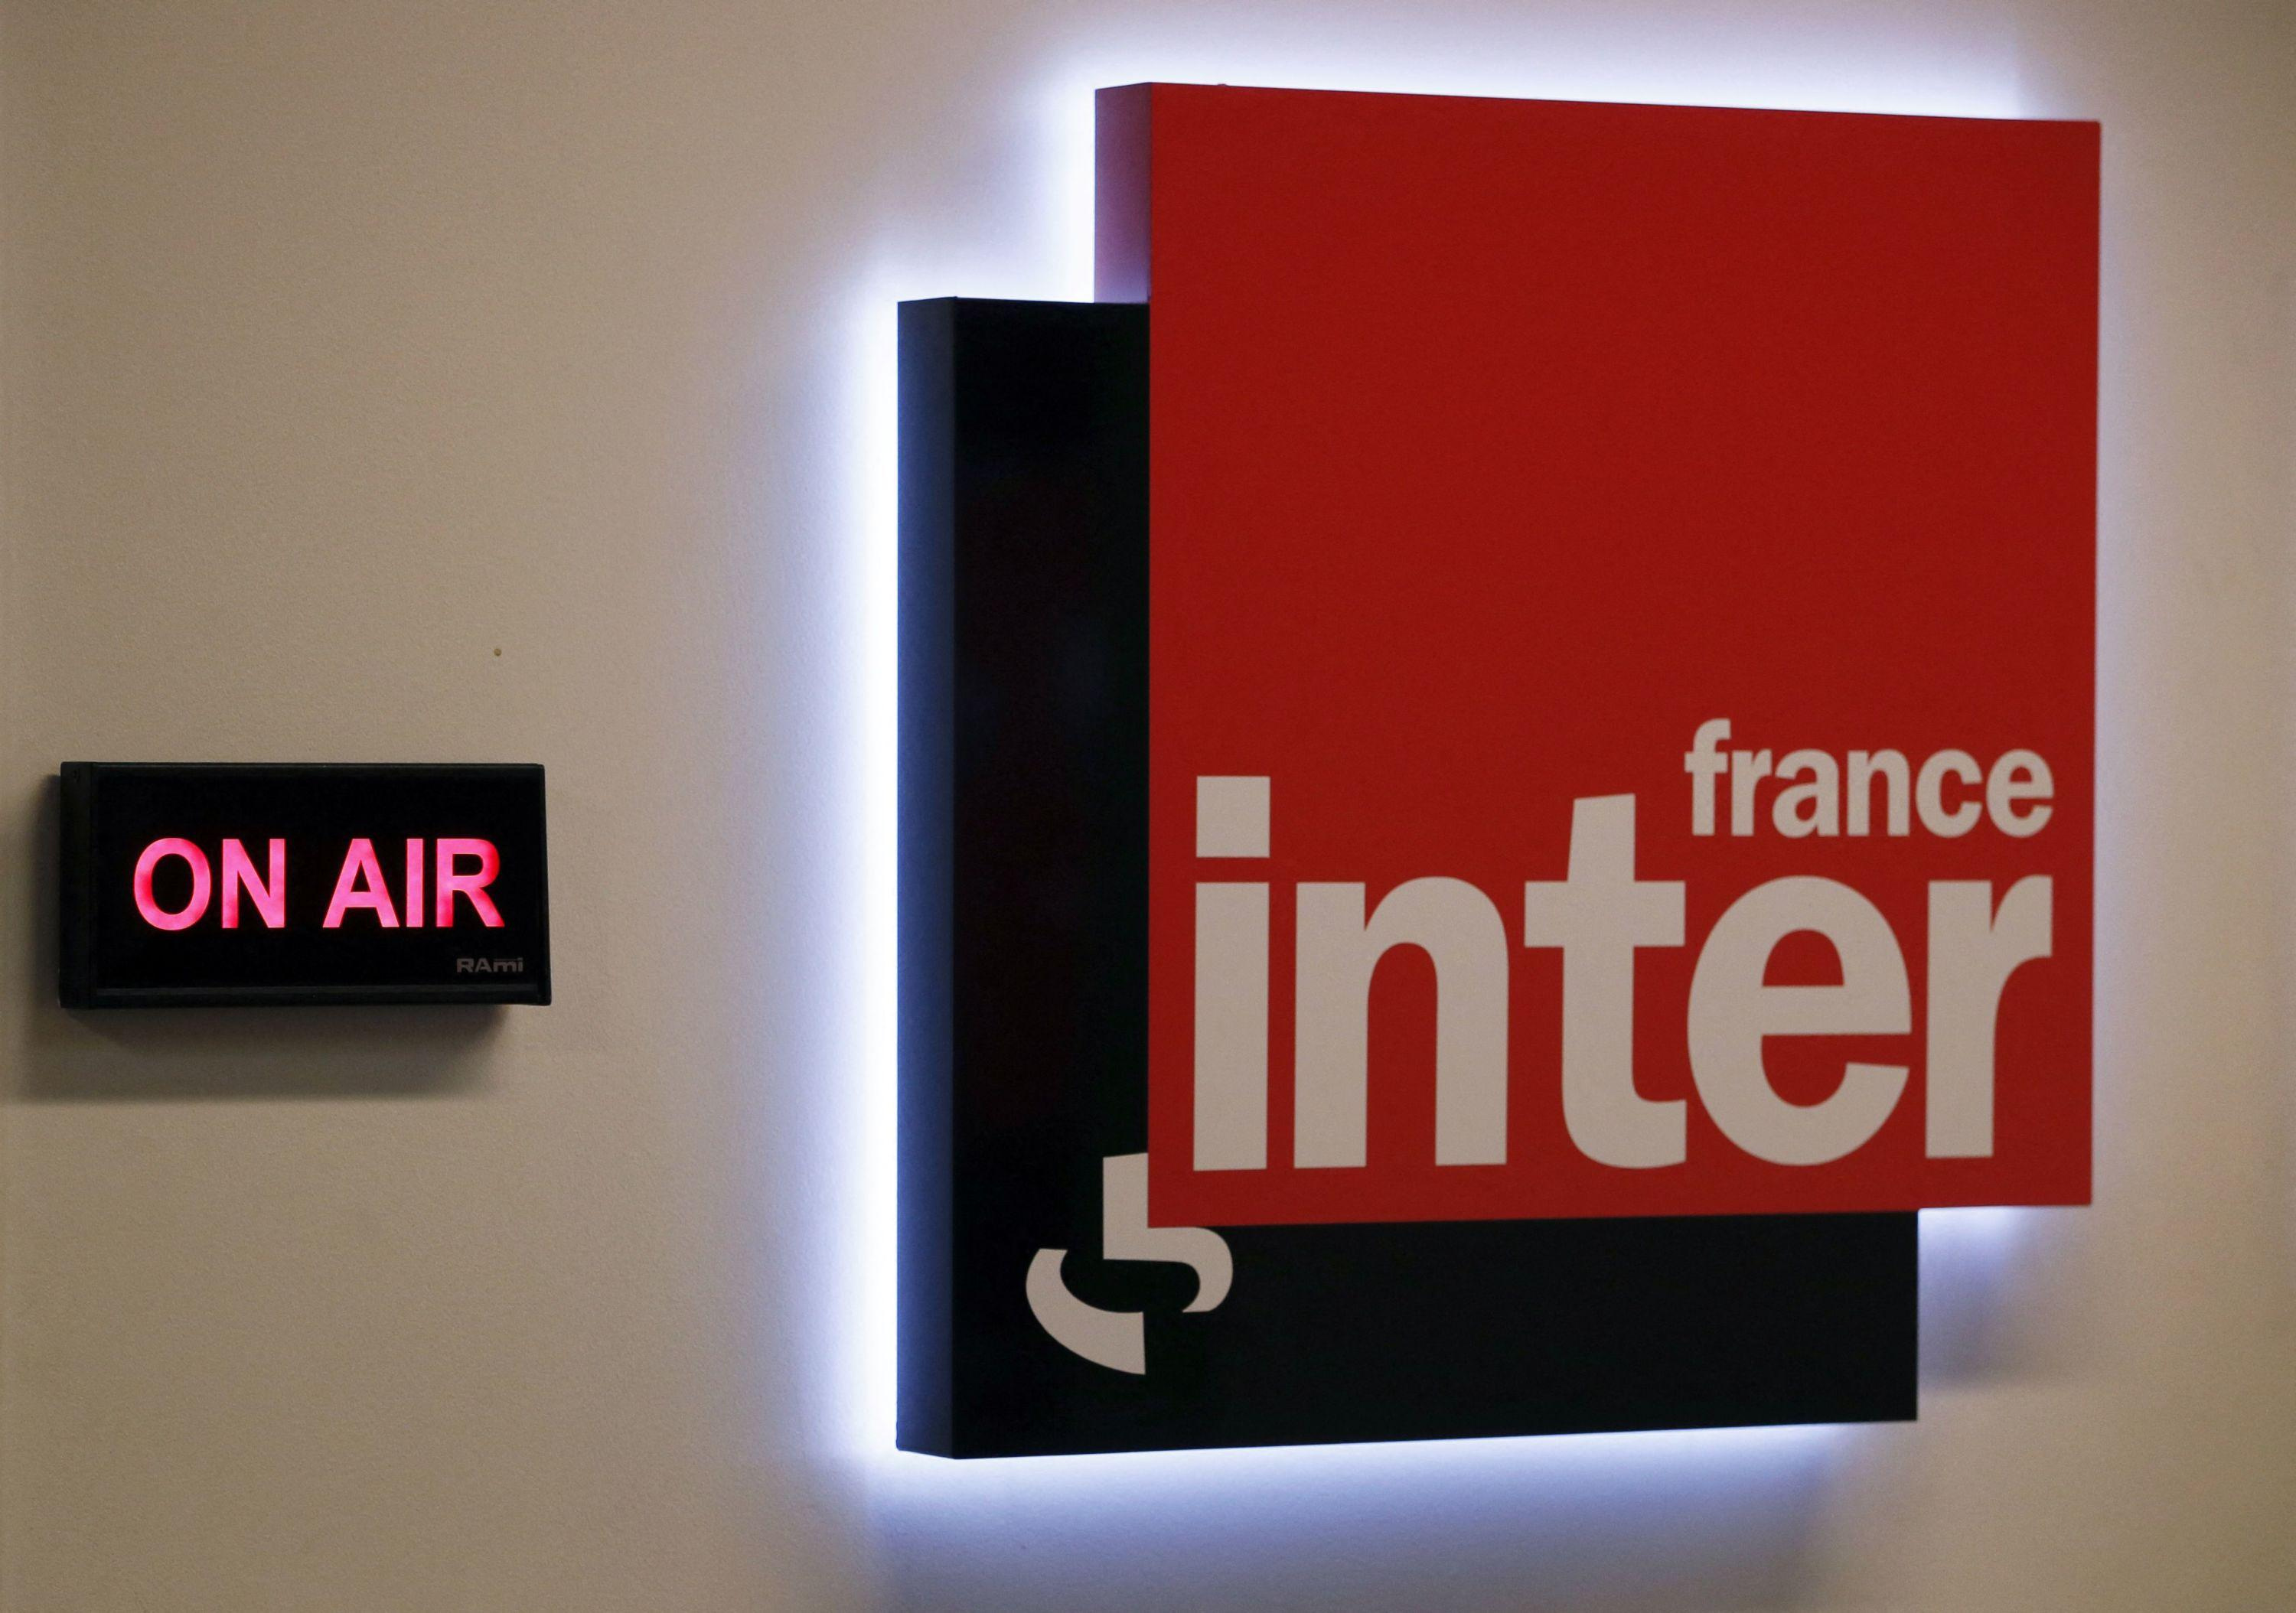 Audiences radio : France Inter reste solidement en tête, Europe 1 poursuit sa remontée